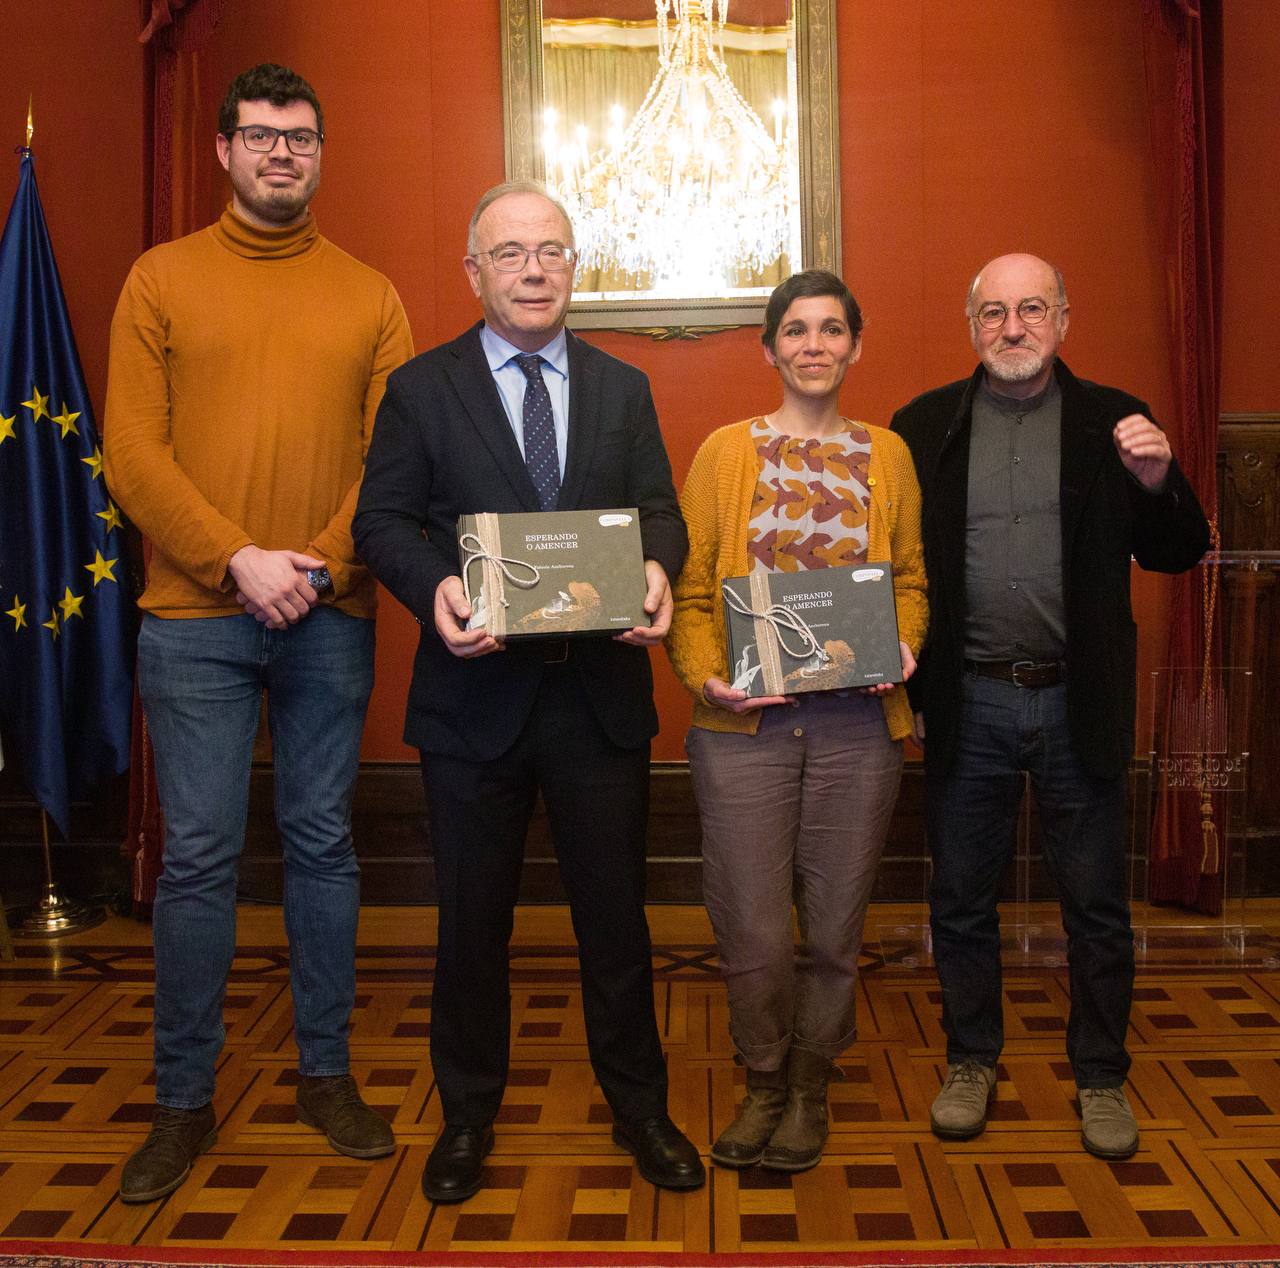 Fabiola Anchorena recollendo o XV premio Compostela para álbums ilustrados pola súa obra